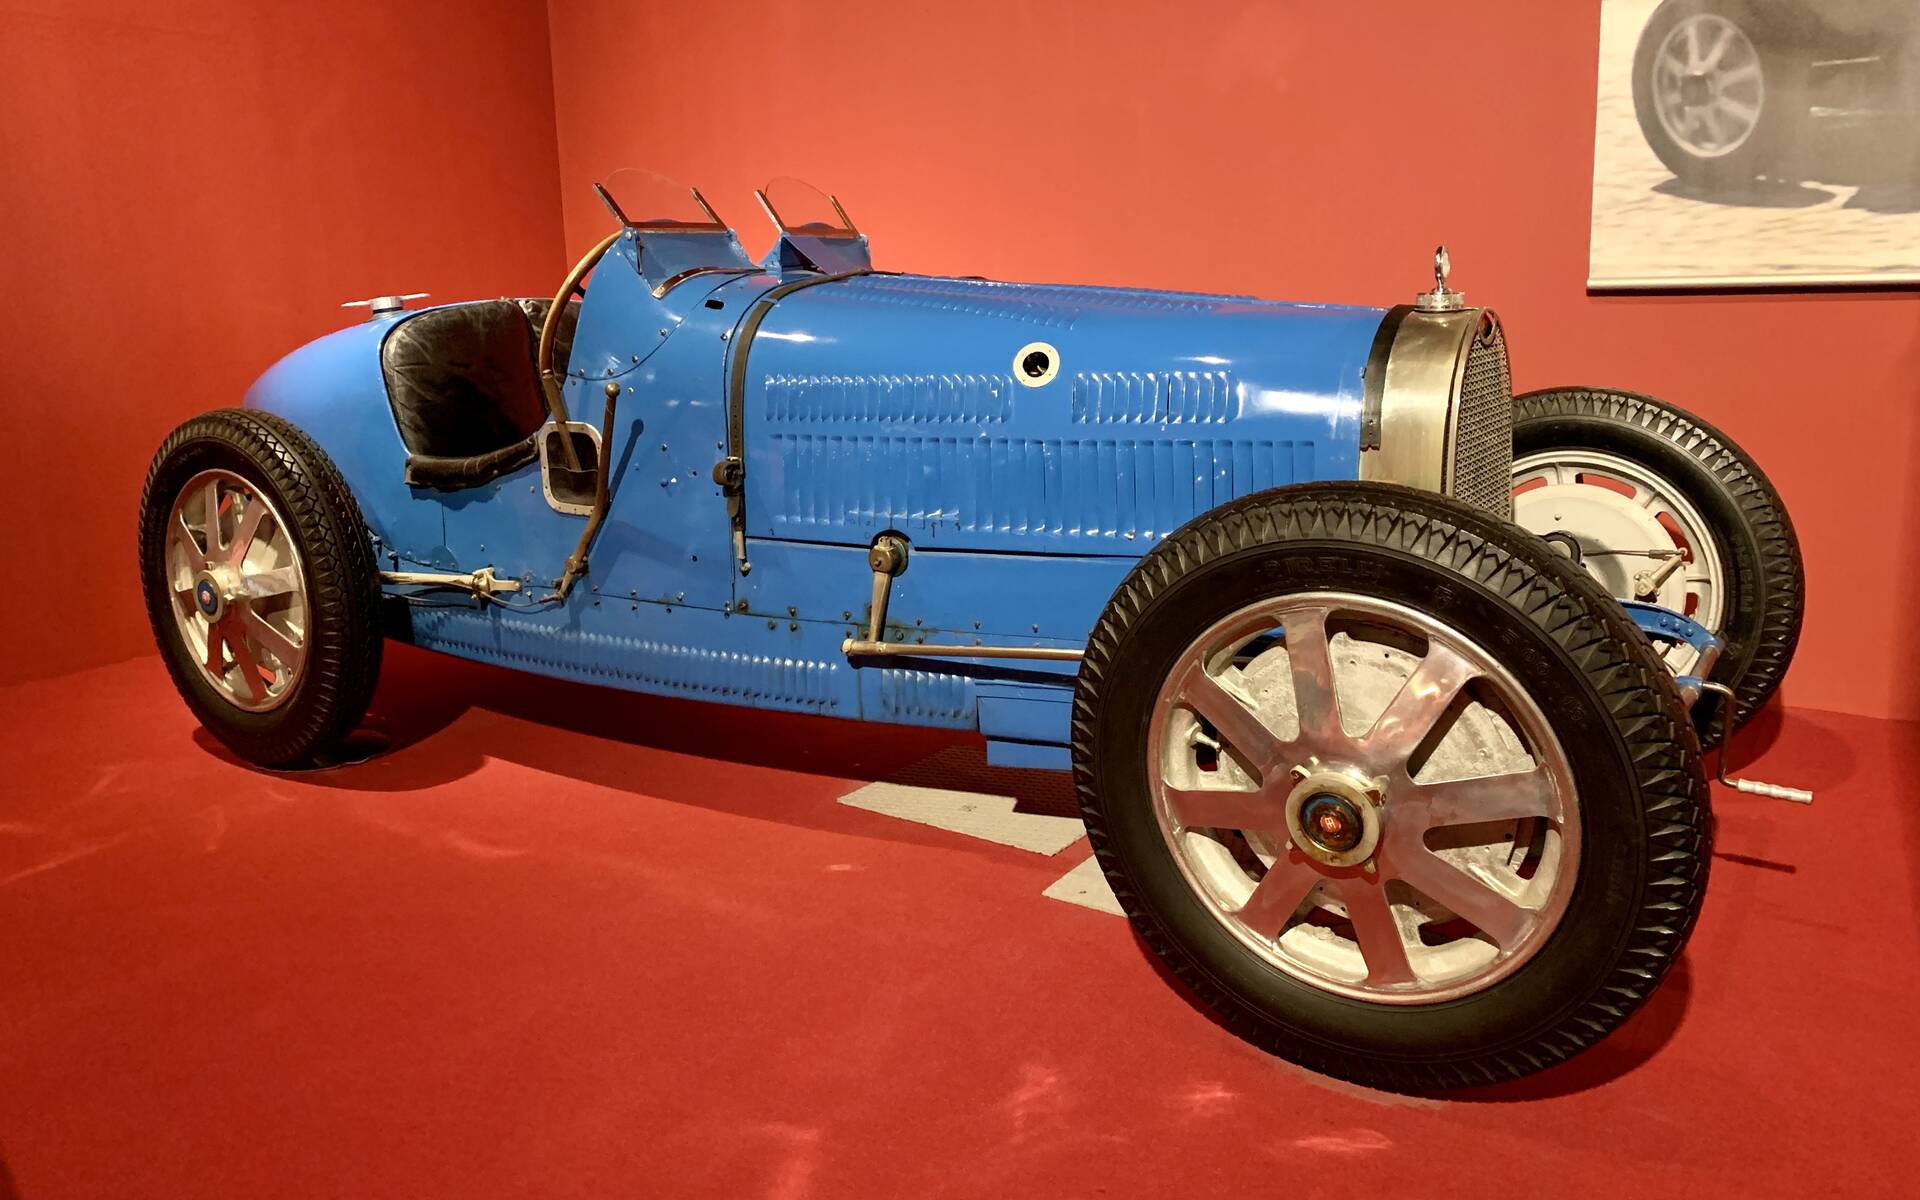 En photos : une centaine de Bugatti réunies dans un même musée 503045-en-photos-des-dizaines-de-bugatti-reunies-dans-un-meme-musee